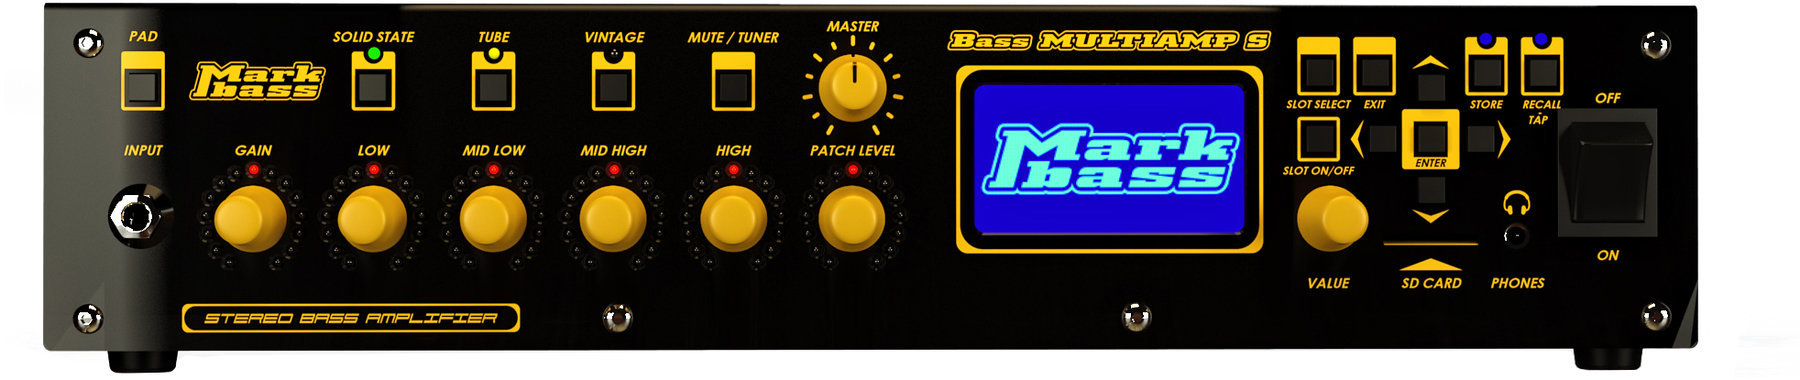 Solid-State Bass Amplifier Markbass Bass Multiamp S 2015